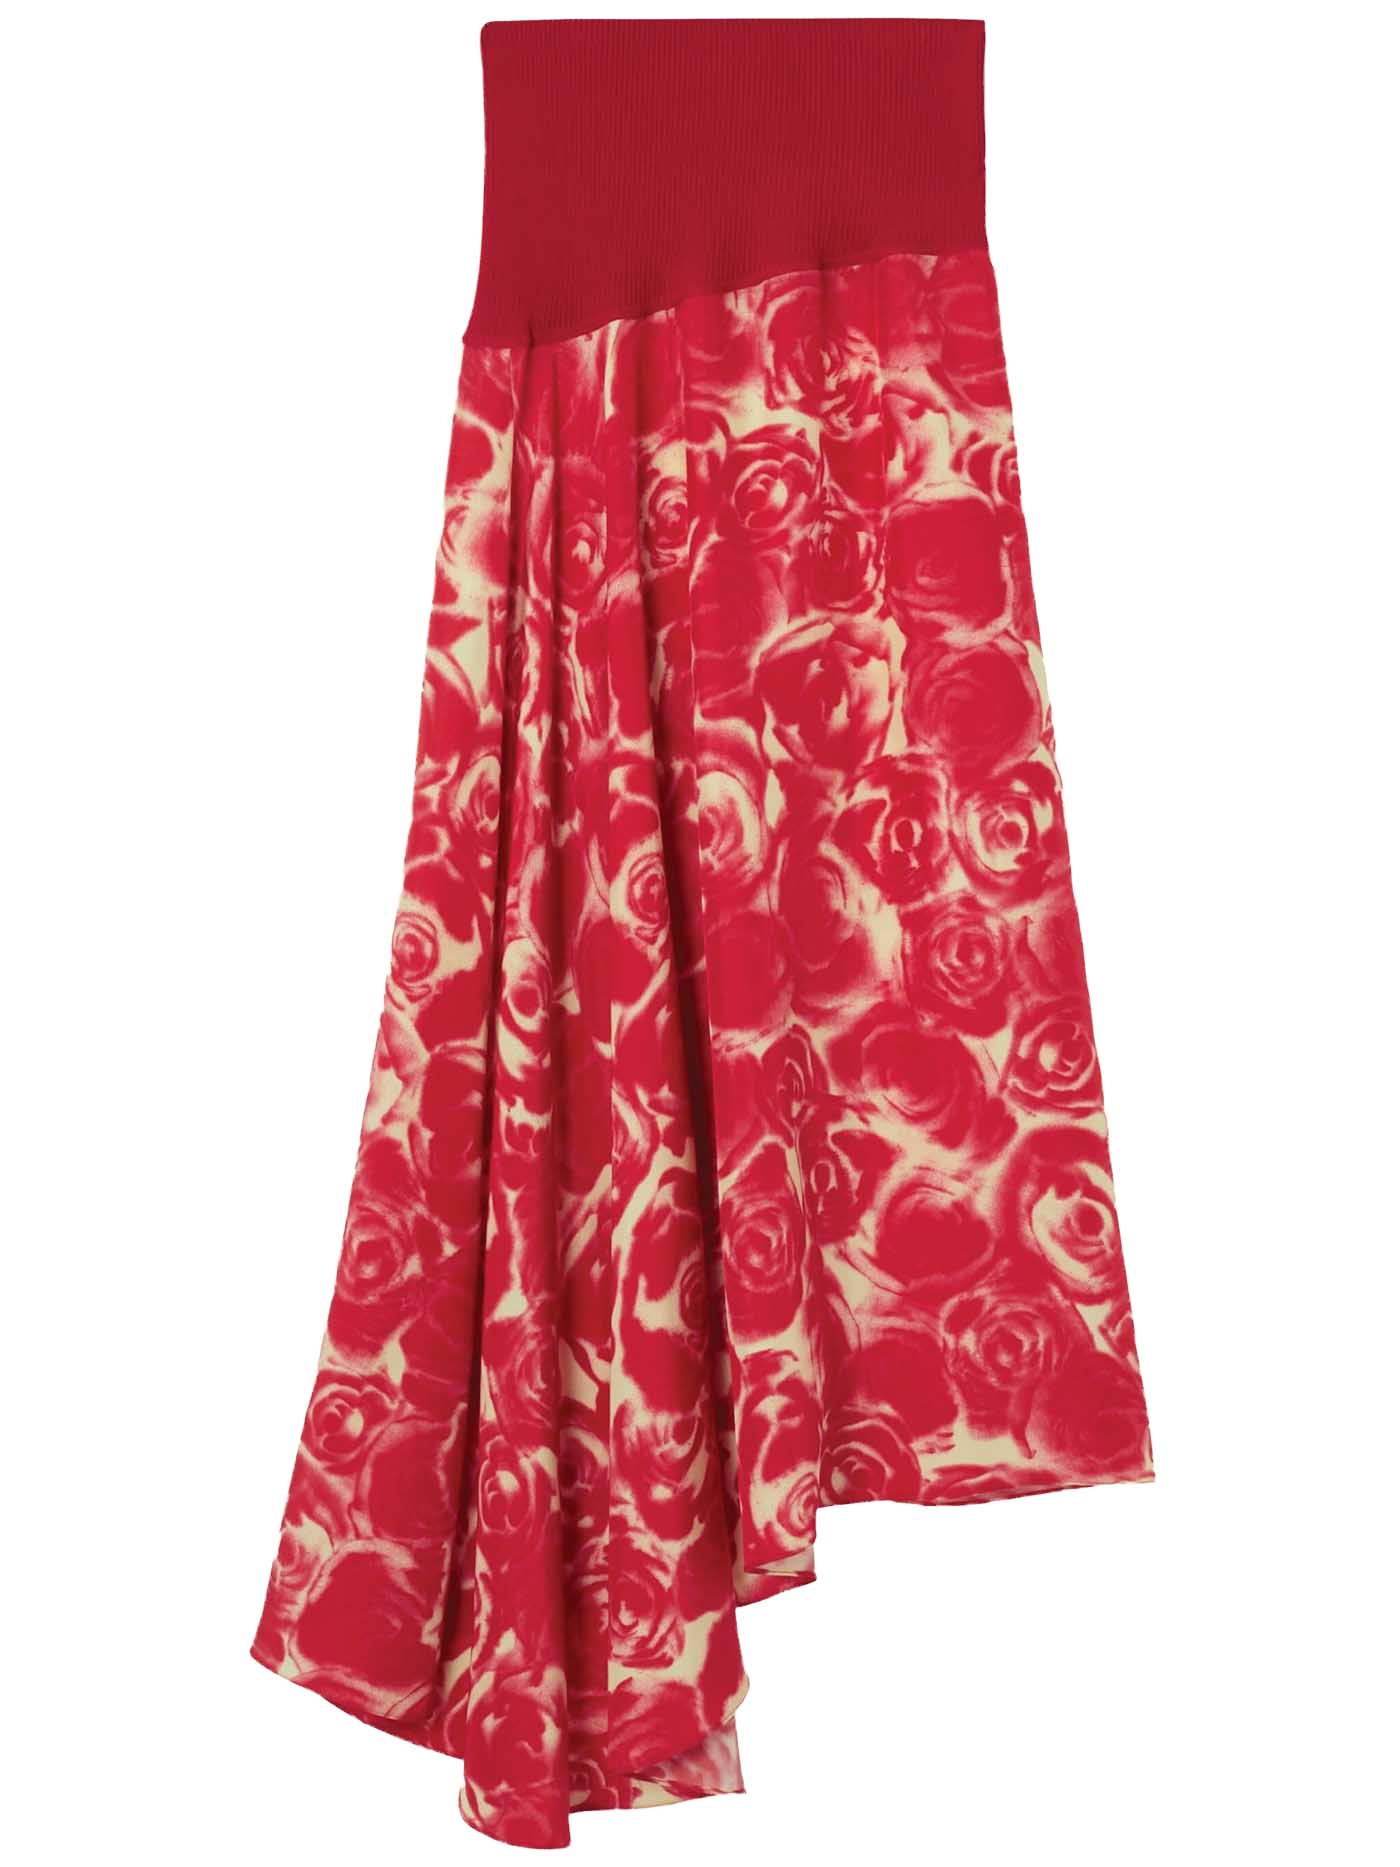 40 Burberry Rose Print Asymmetric Silk Skirt $2,090 Burberry.com